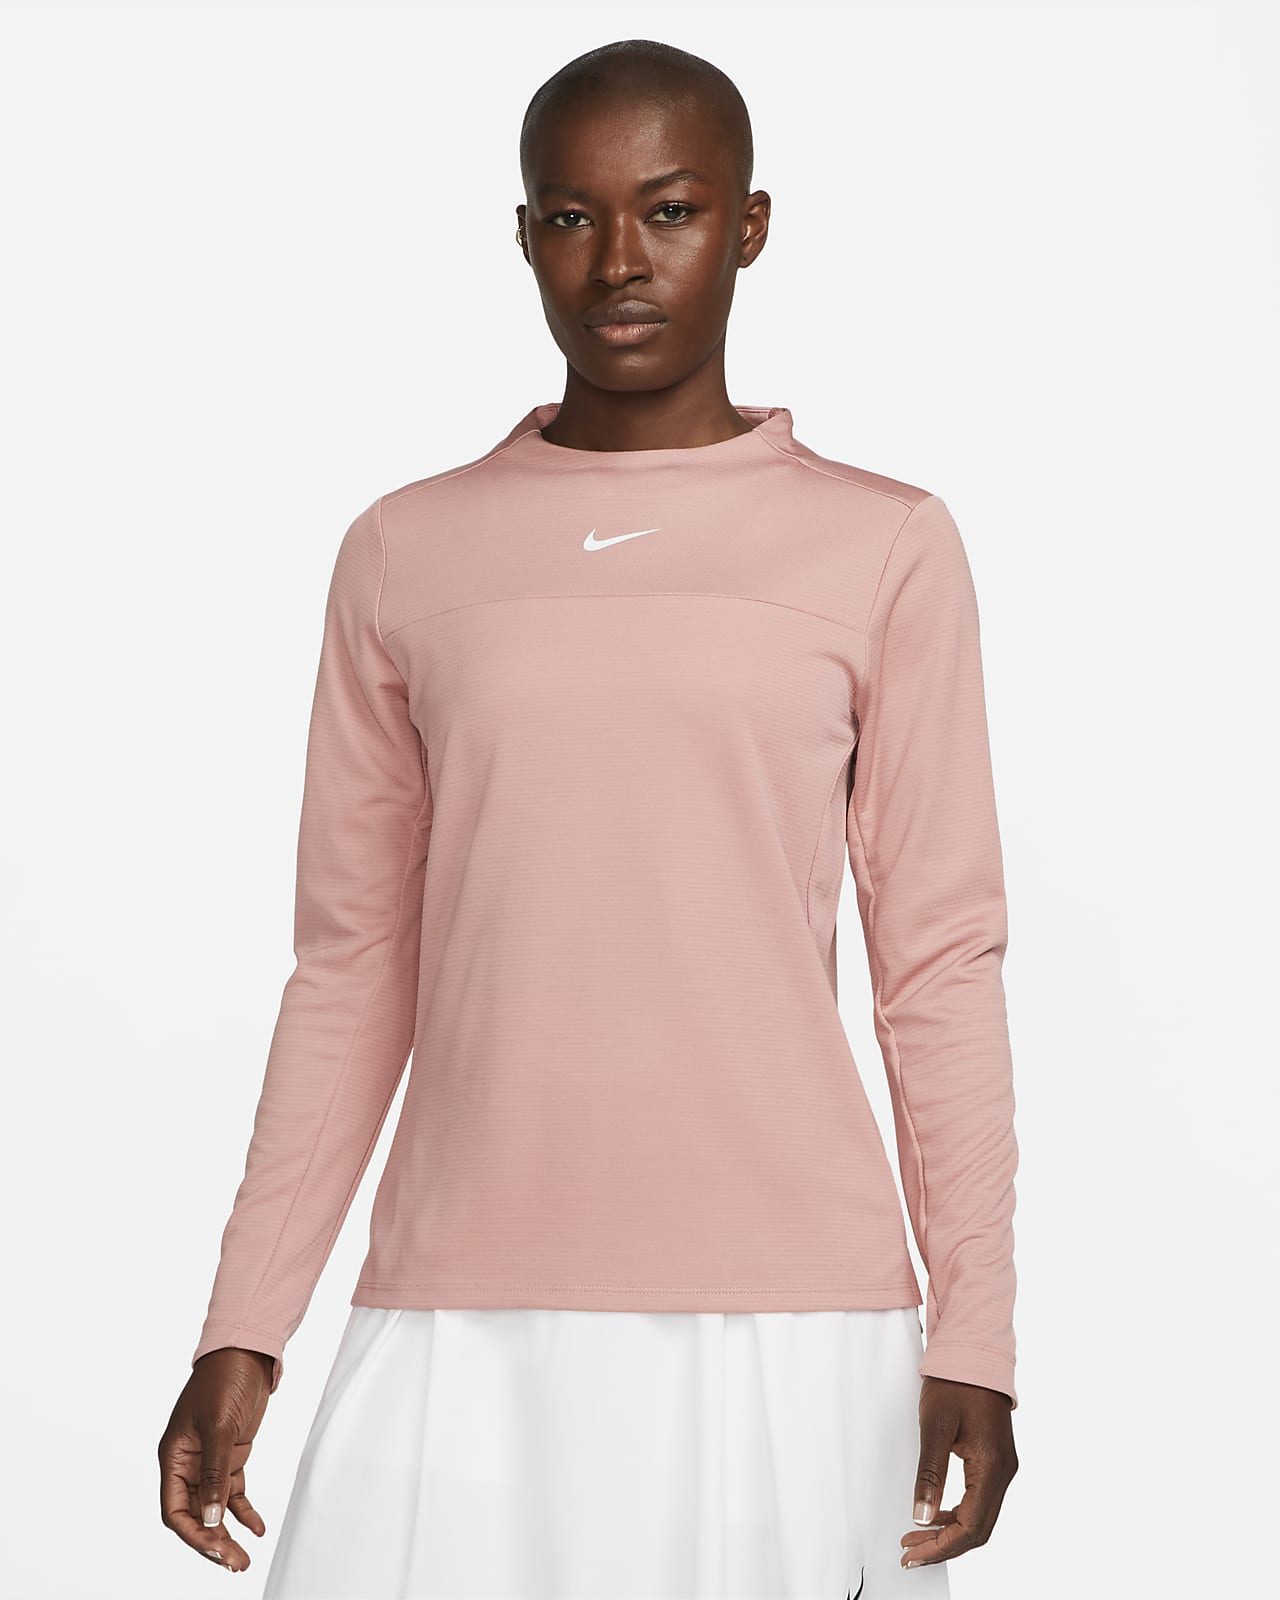 de golf de cuello alto para mujer Nike Nike .com